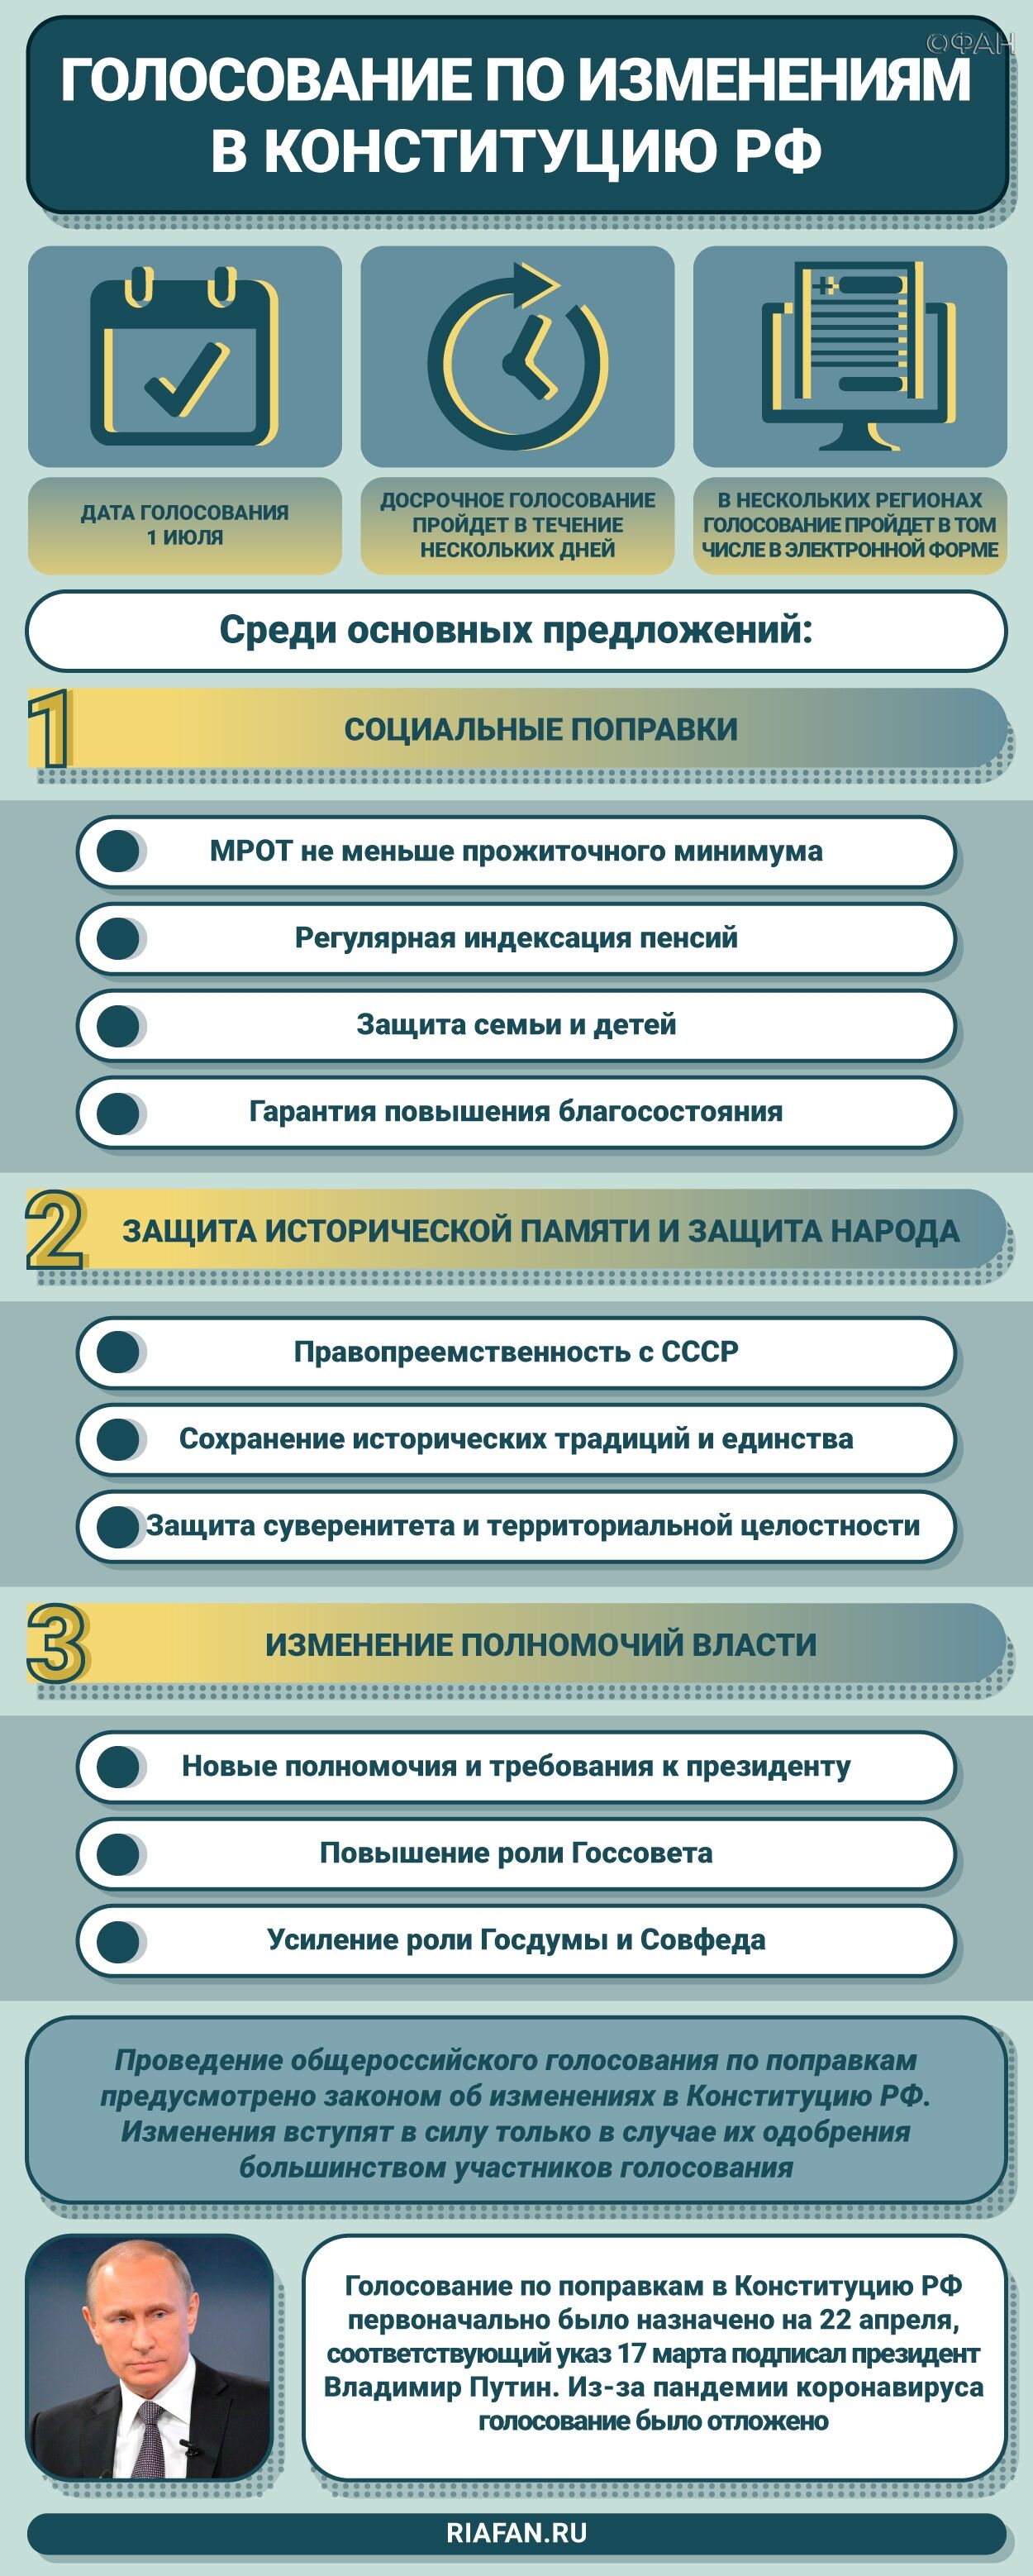 Почти половина избирателей проголосовали по поправкам в Конституцию РФ в Забайкалье